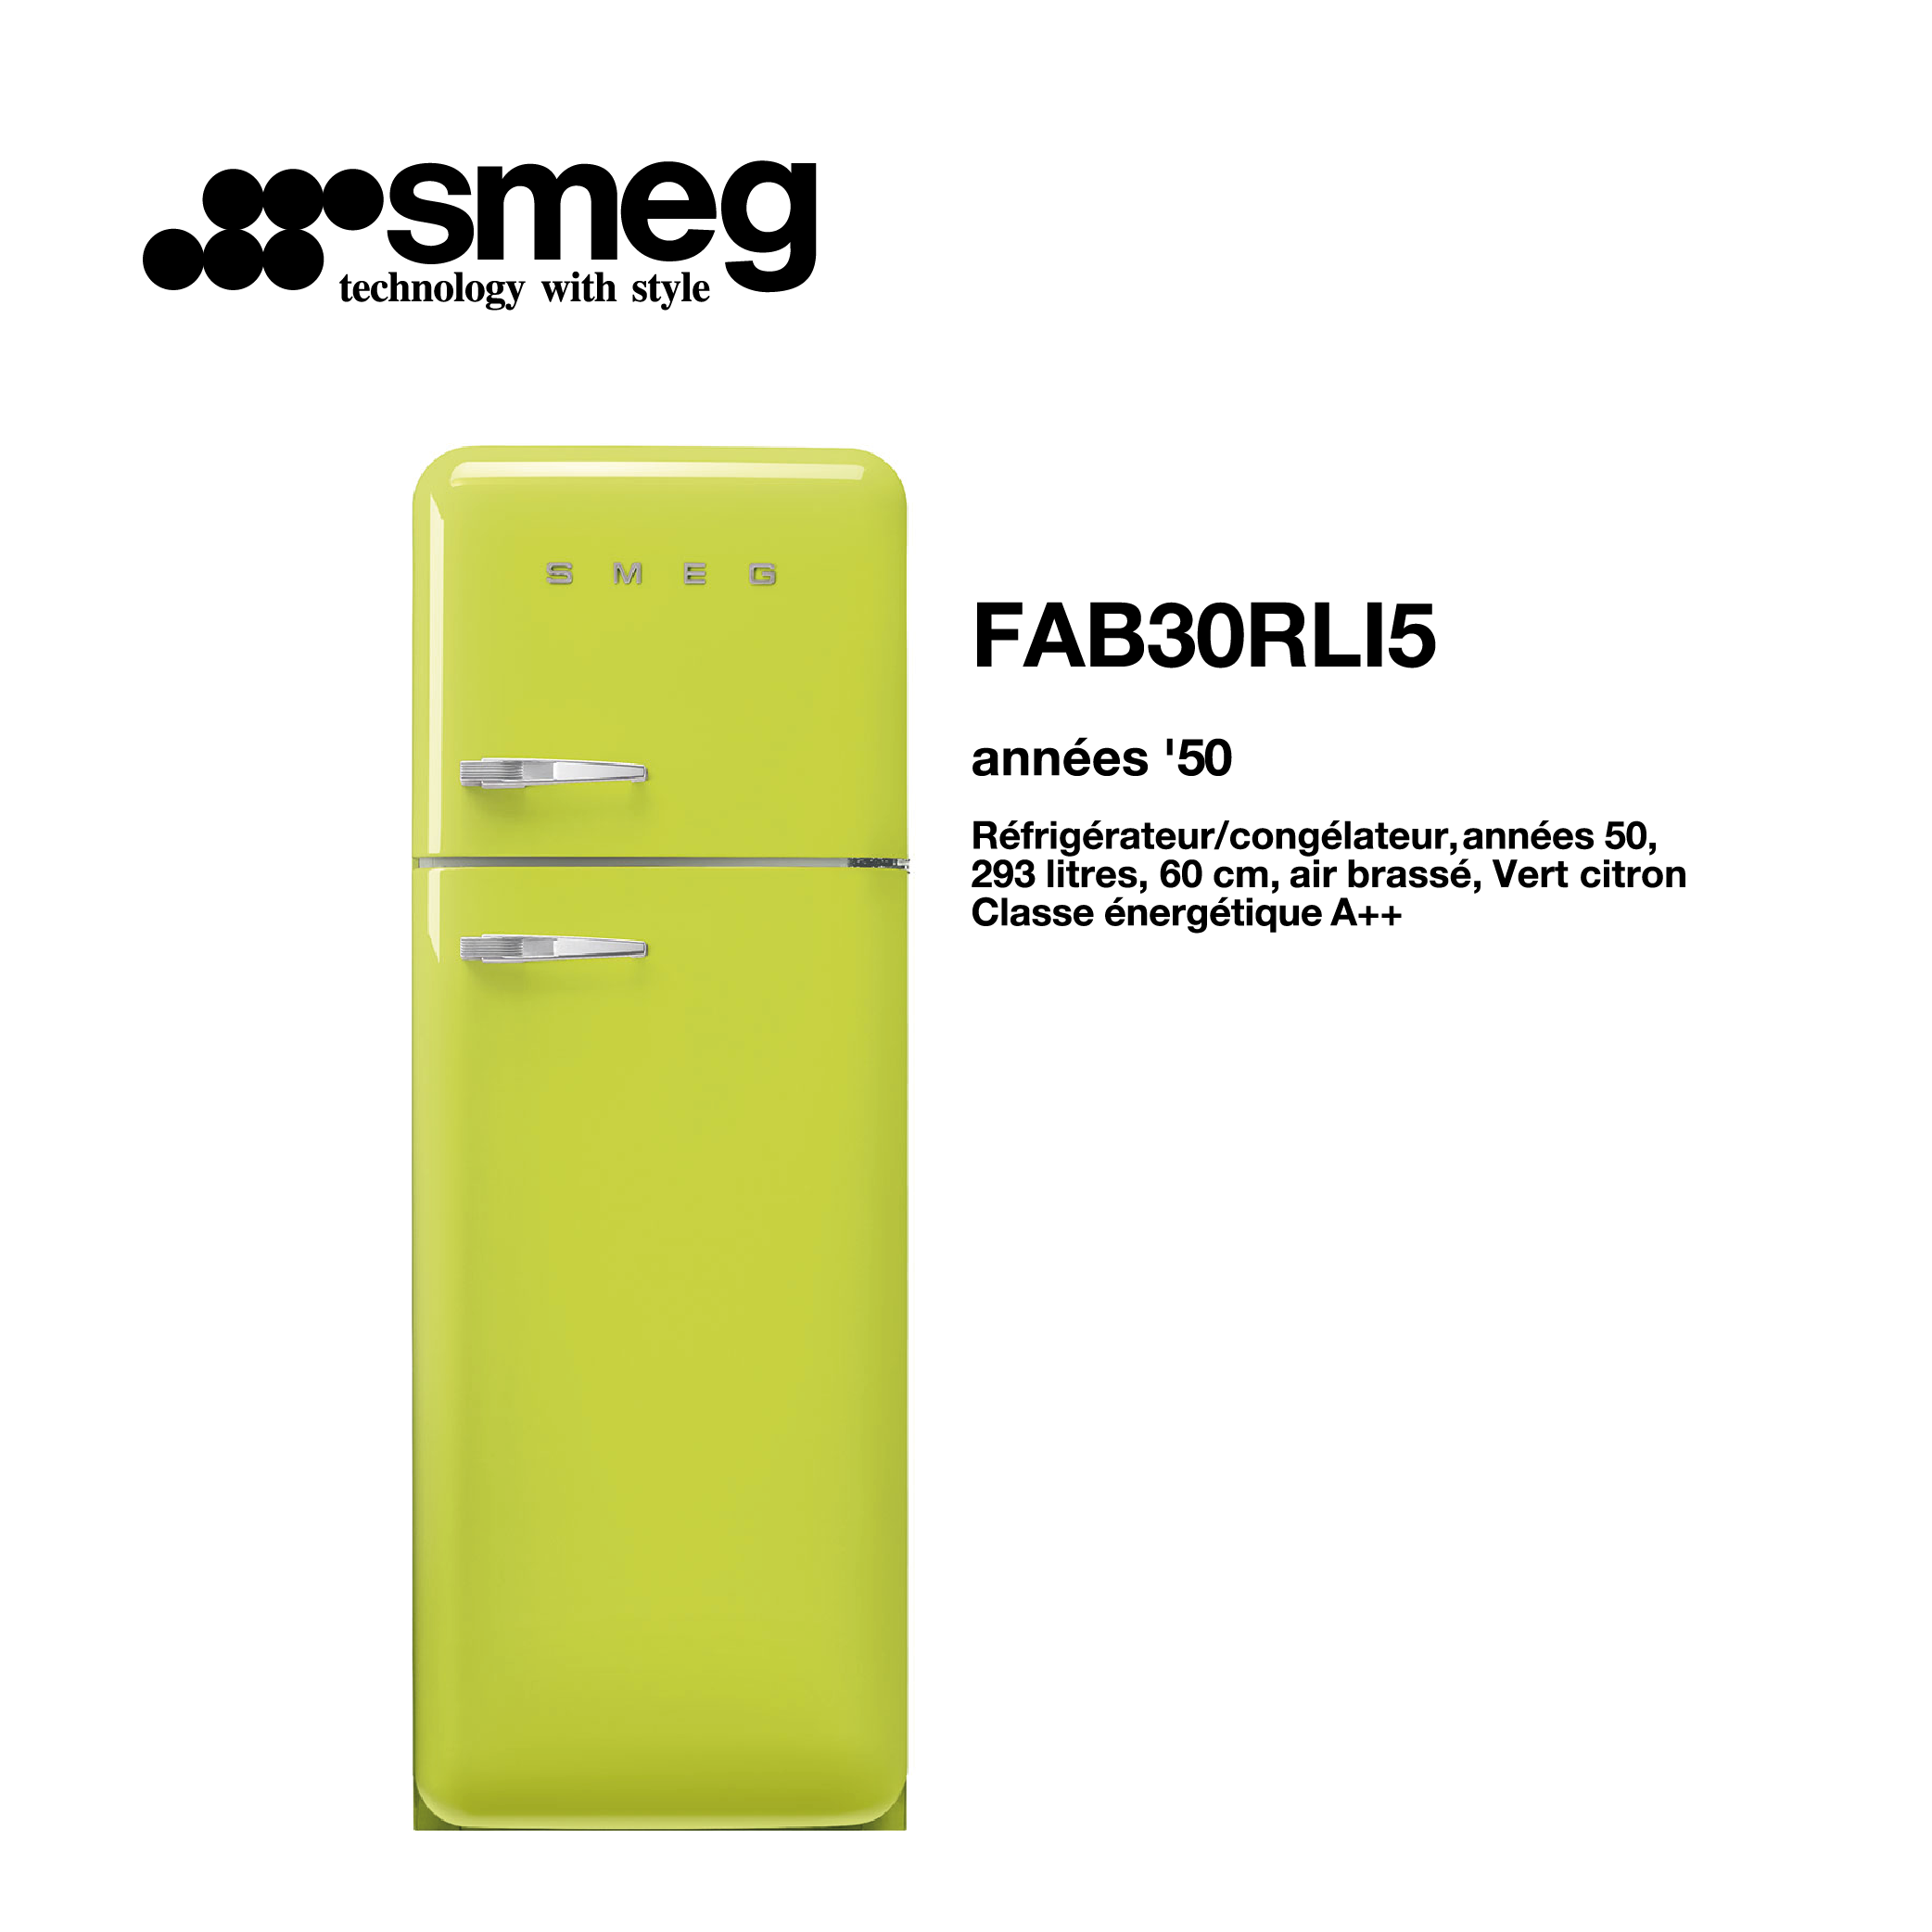 Réfrigérateur congélateur smeg Air brassé 293 Litre 60cm couleur vert 2 portes style années 50 FAB30RLI5